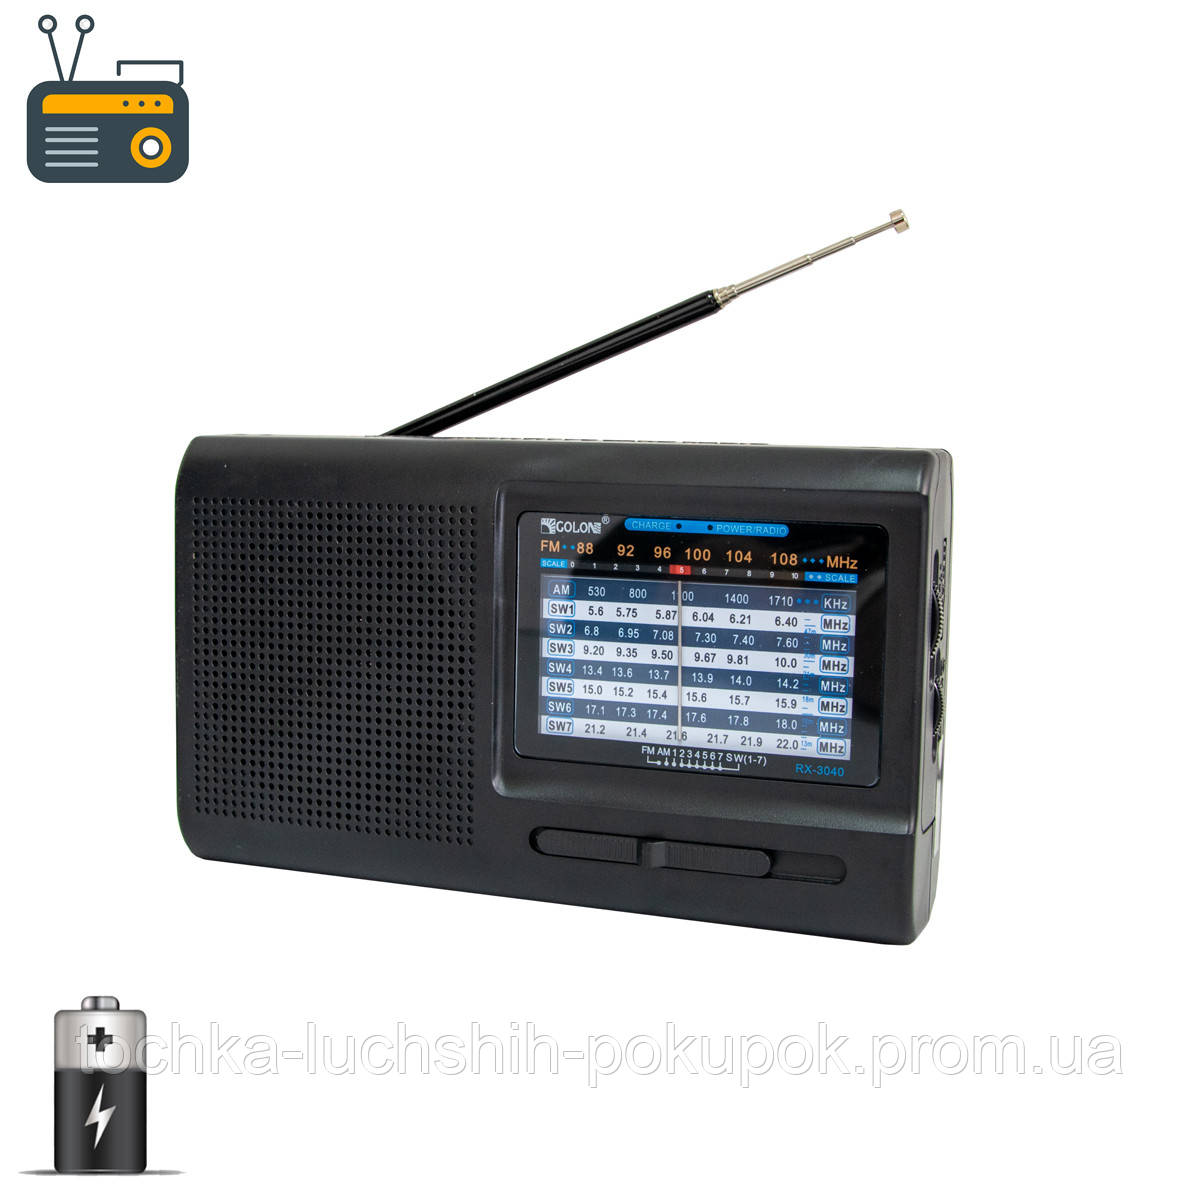 Радіоприймач ФМ Golon RX-3040 радіо на батарейках з гарним прийомом, портативний приймач FM/AM